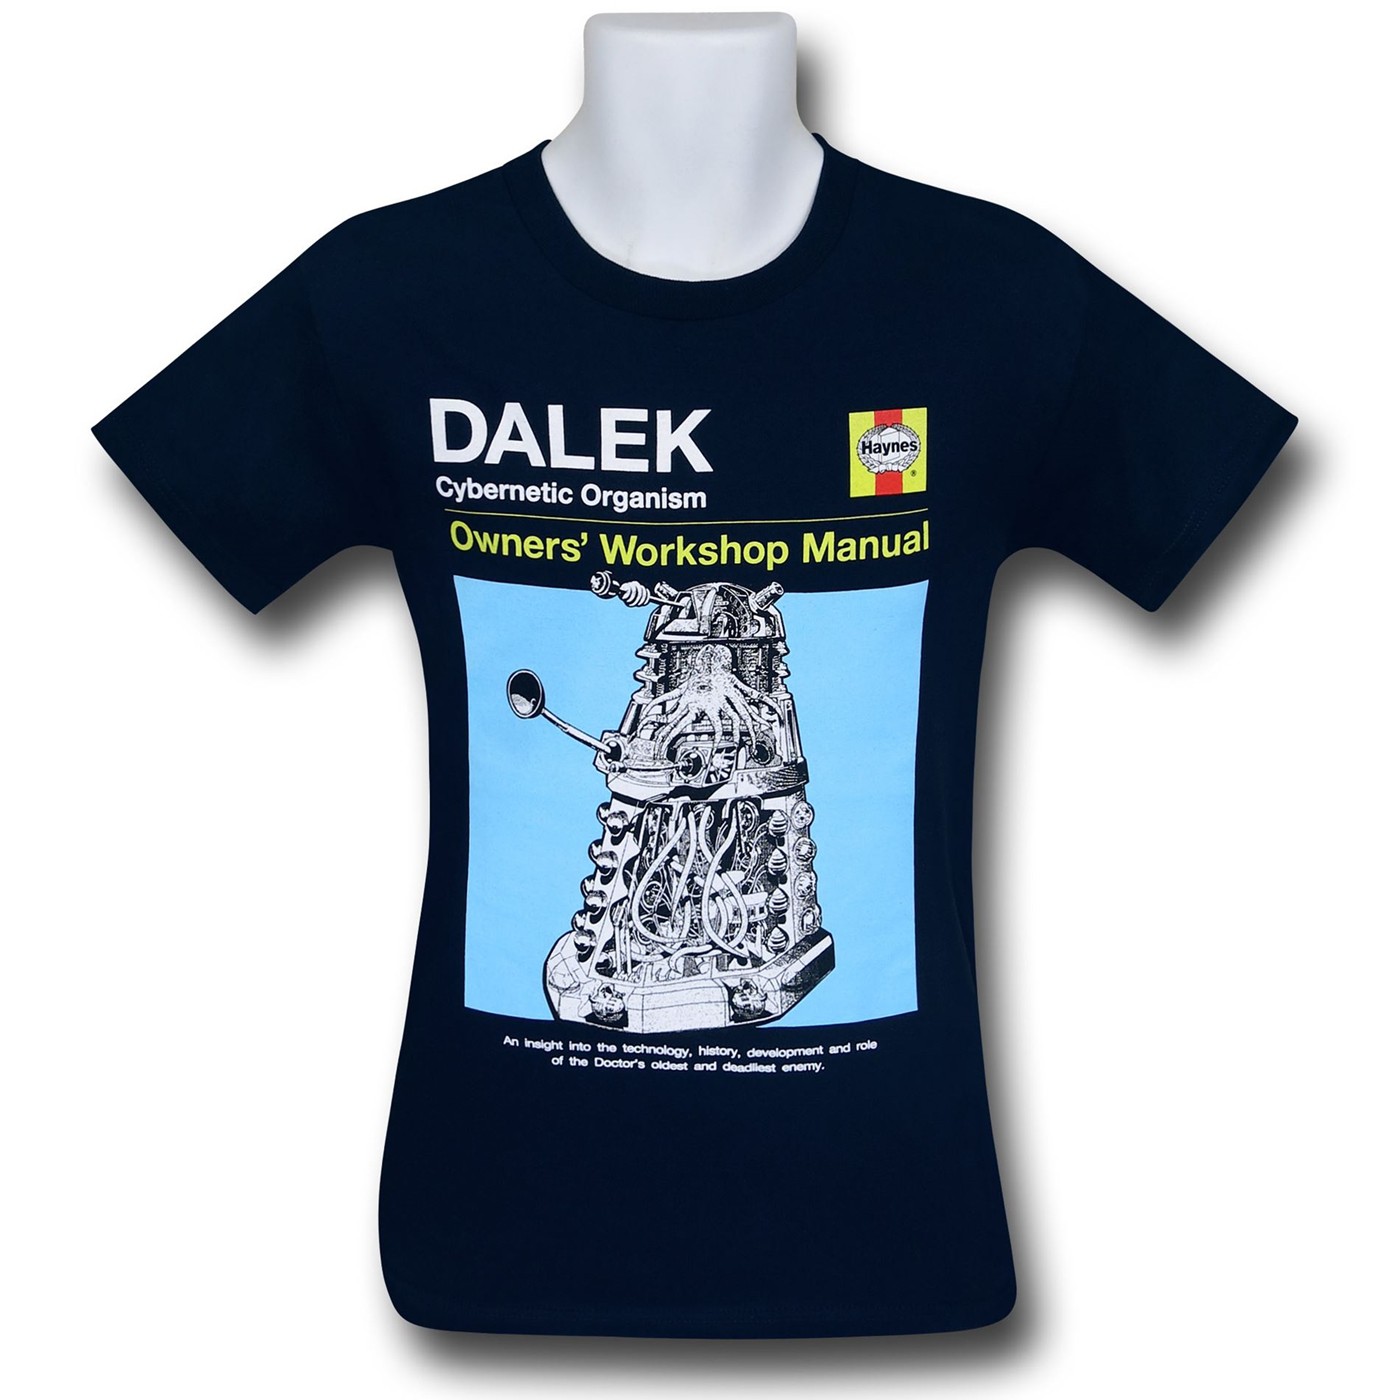 Doctor Who Dalek Repair Manual T-Shirt